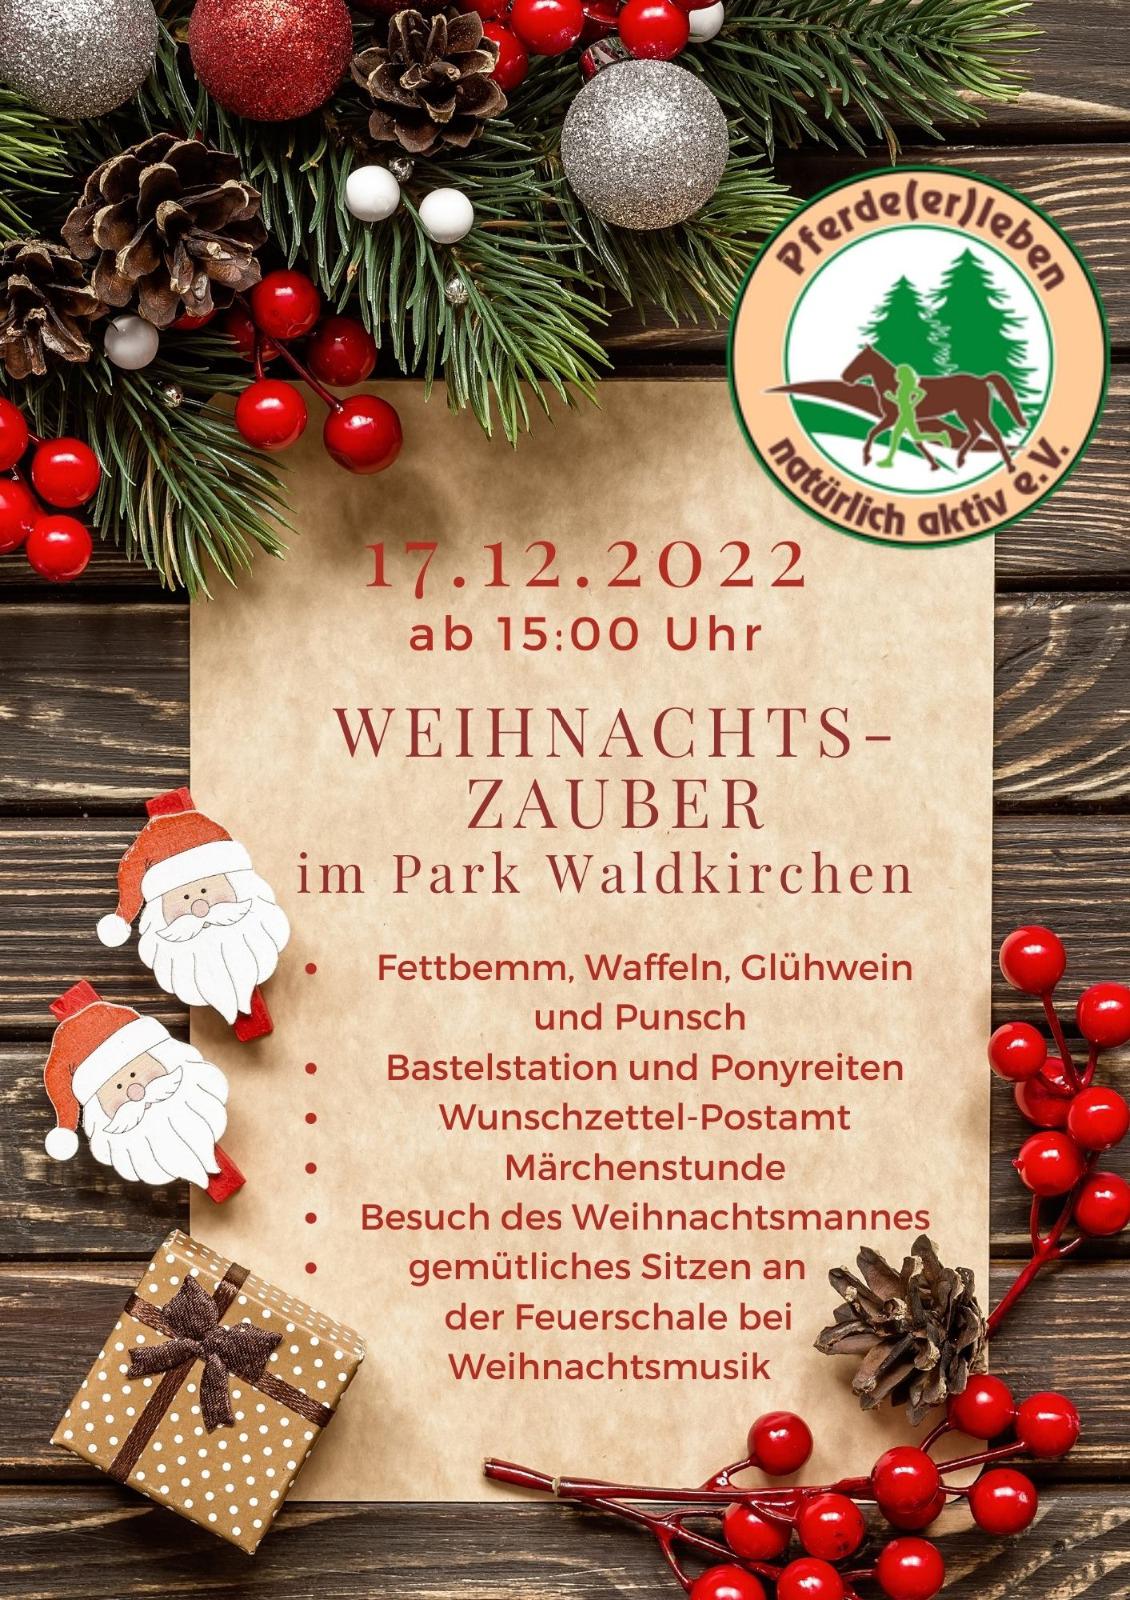 Lebendiger Adventskalender - Weihnachtszauber im Park Waldkirchen am 17.12.2022